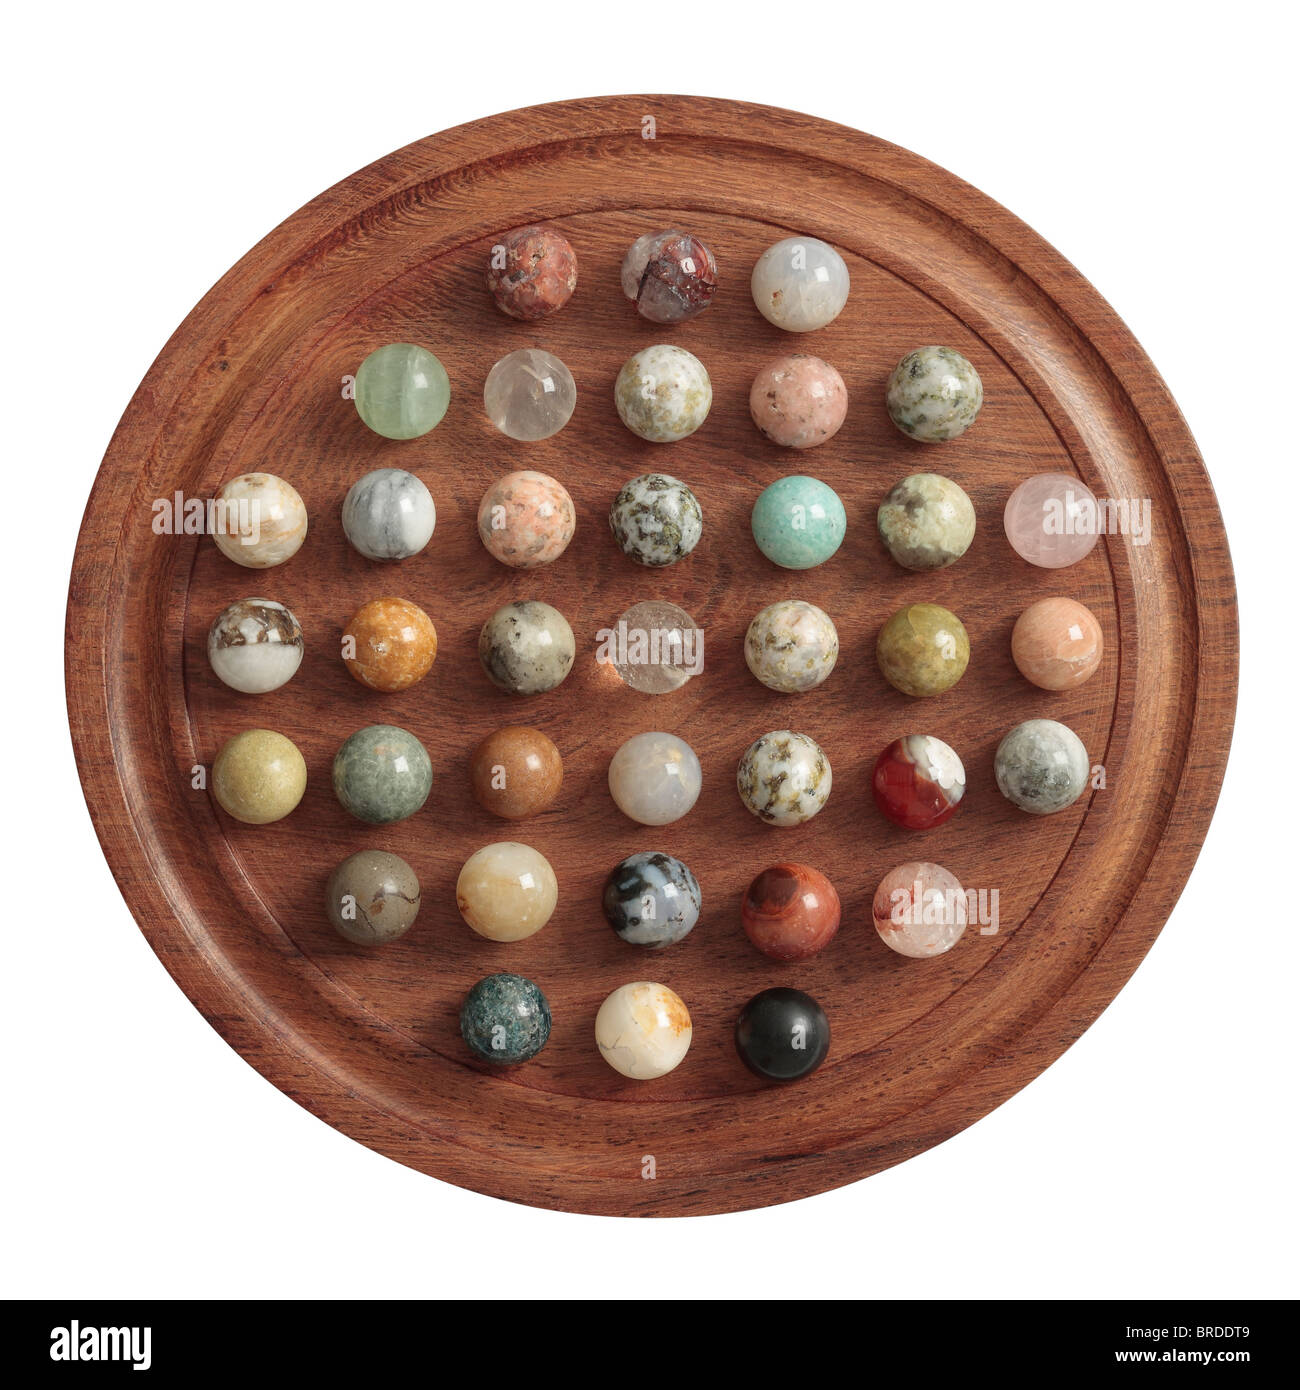 Solitaire Board with Semi-Precious Stone Balls Stock Photo - Alamy